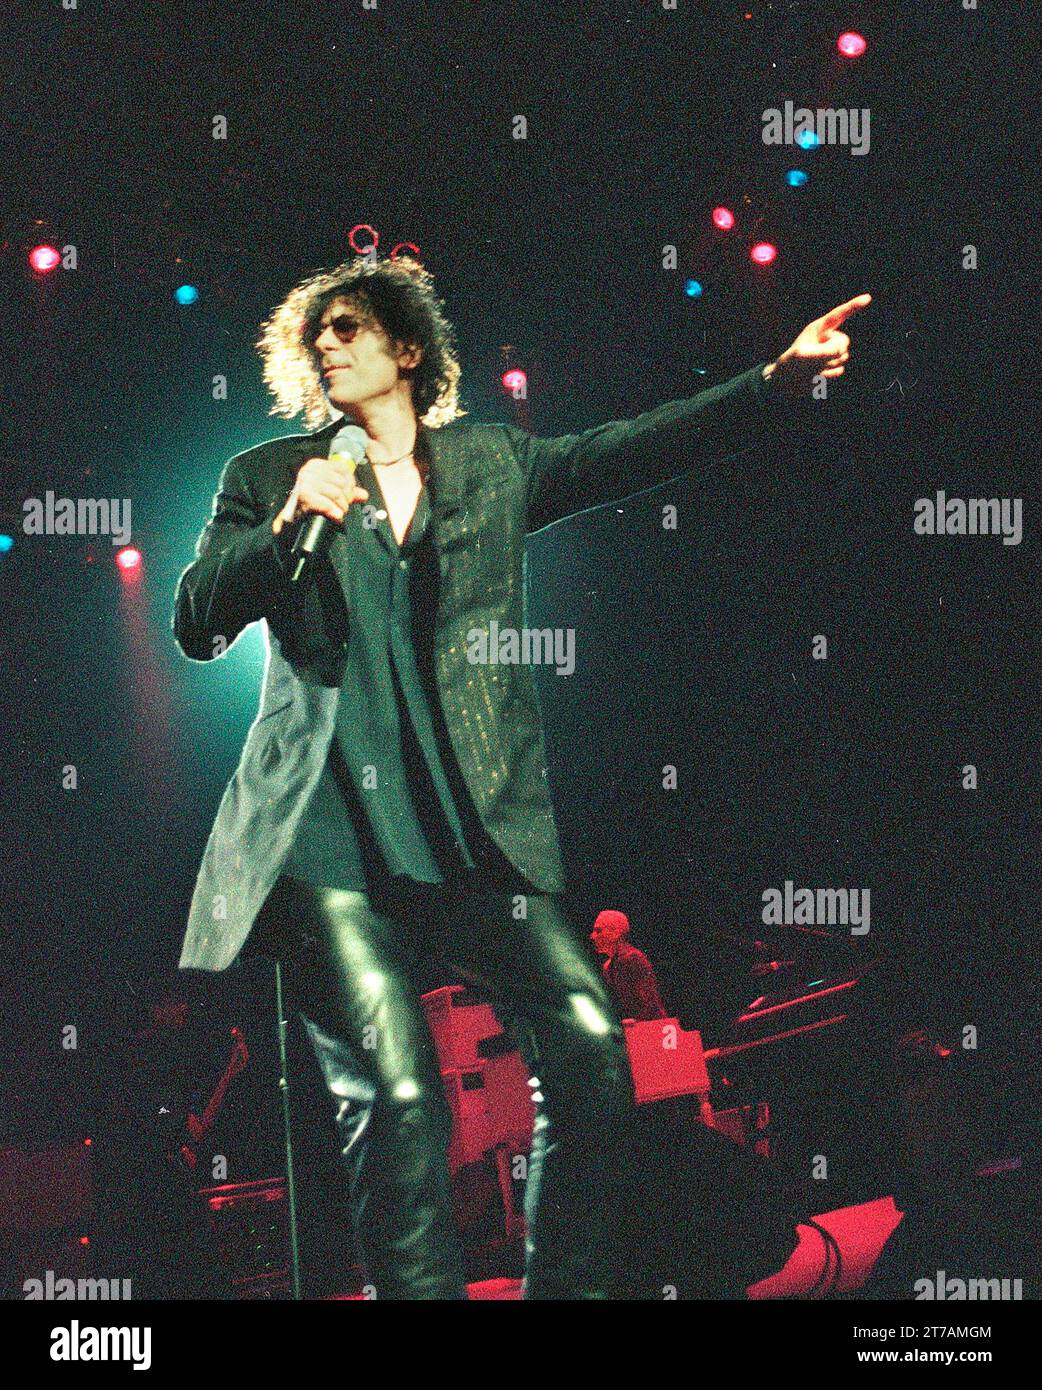 J Giles 23. Juni 1999 singend im Tweeter Center in Mansfield Ma USA Foto von Bill belknap Stockfoto